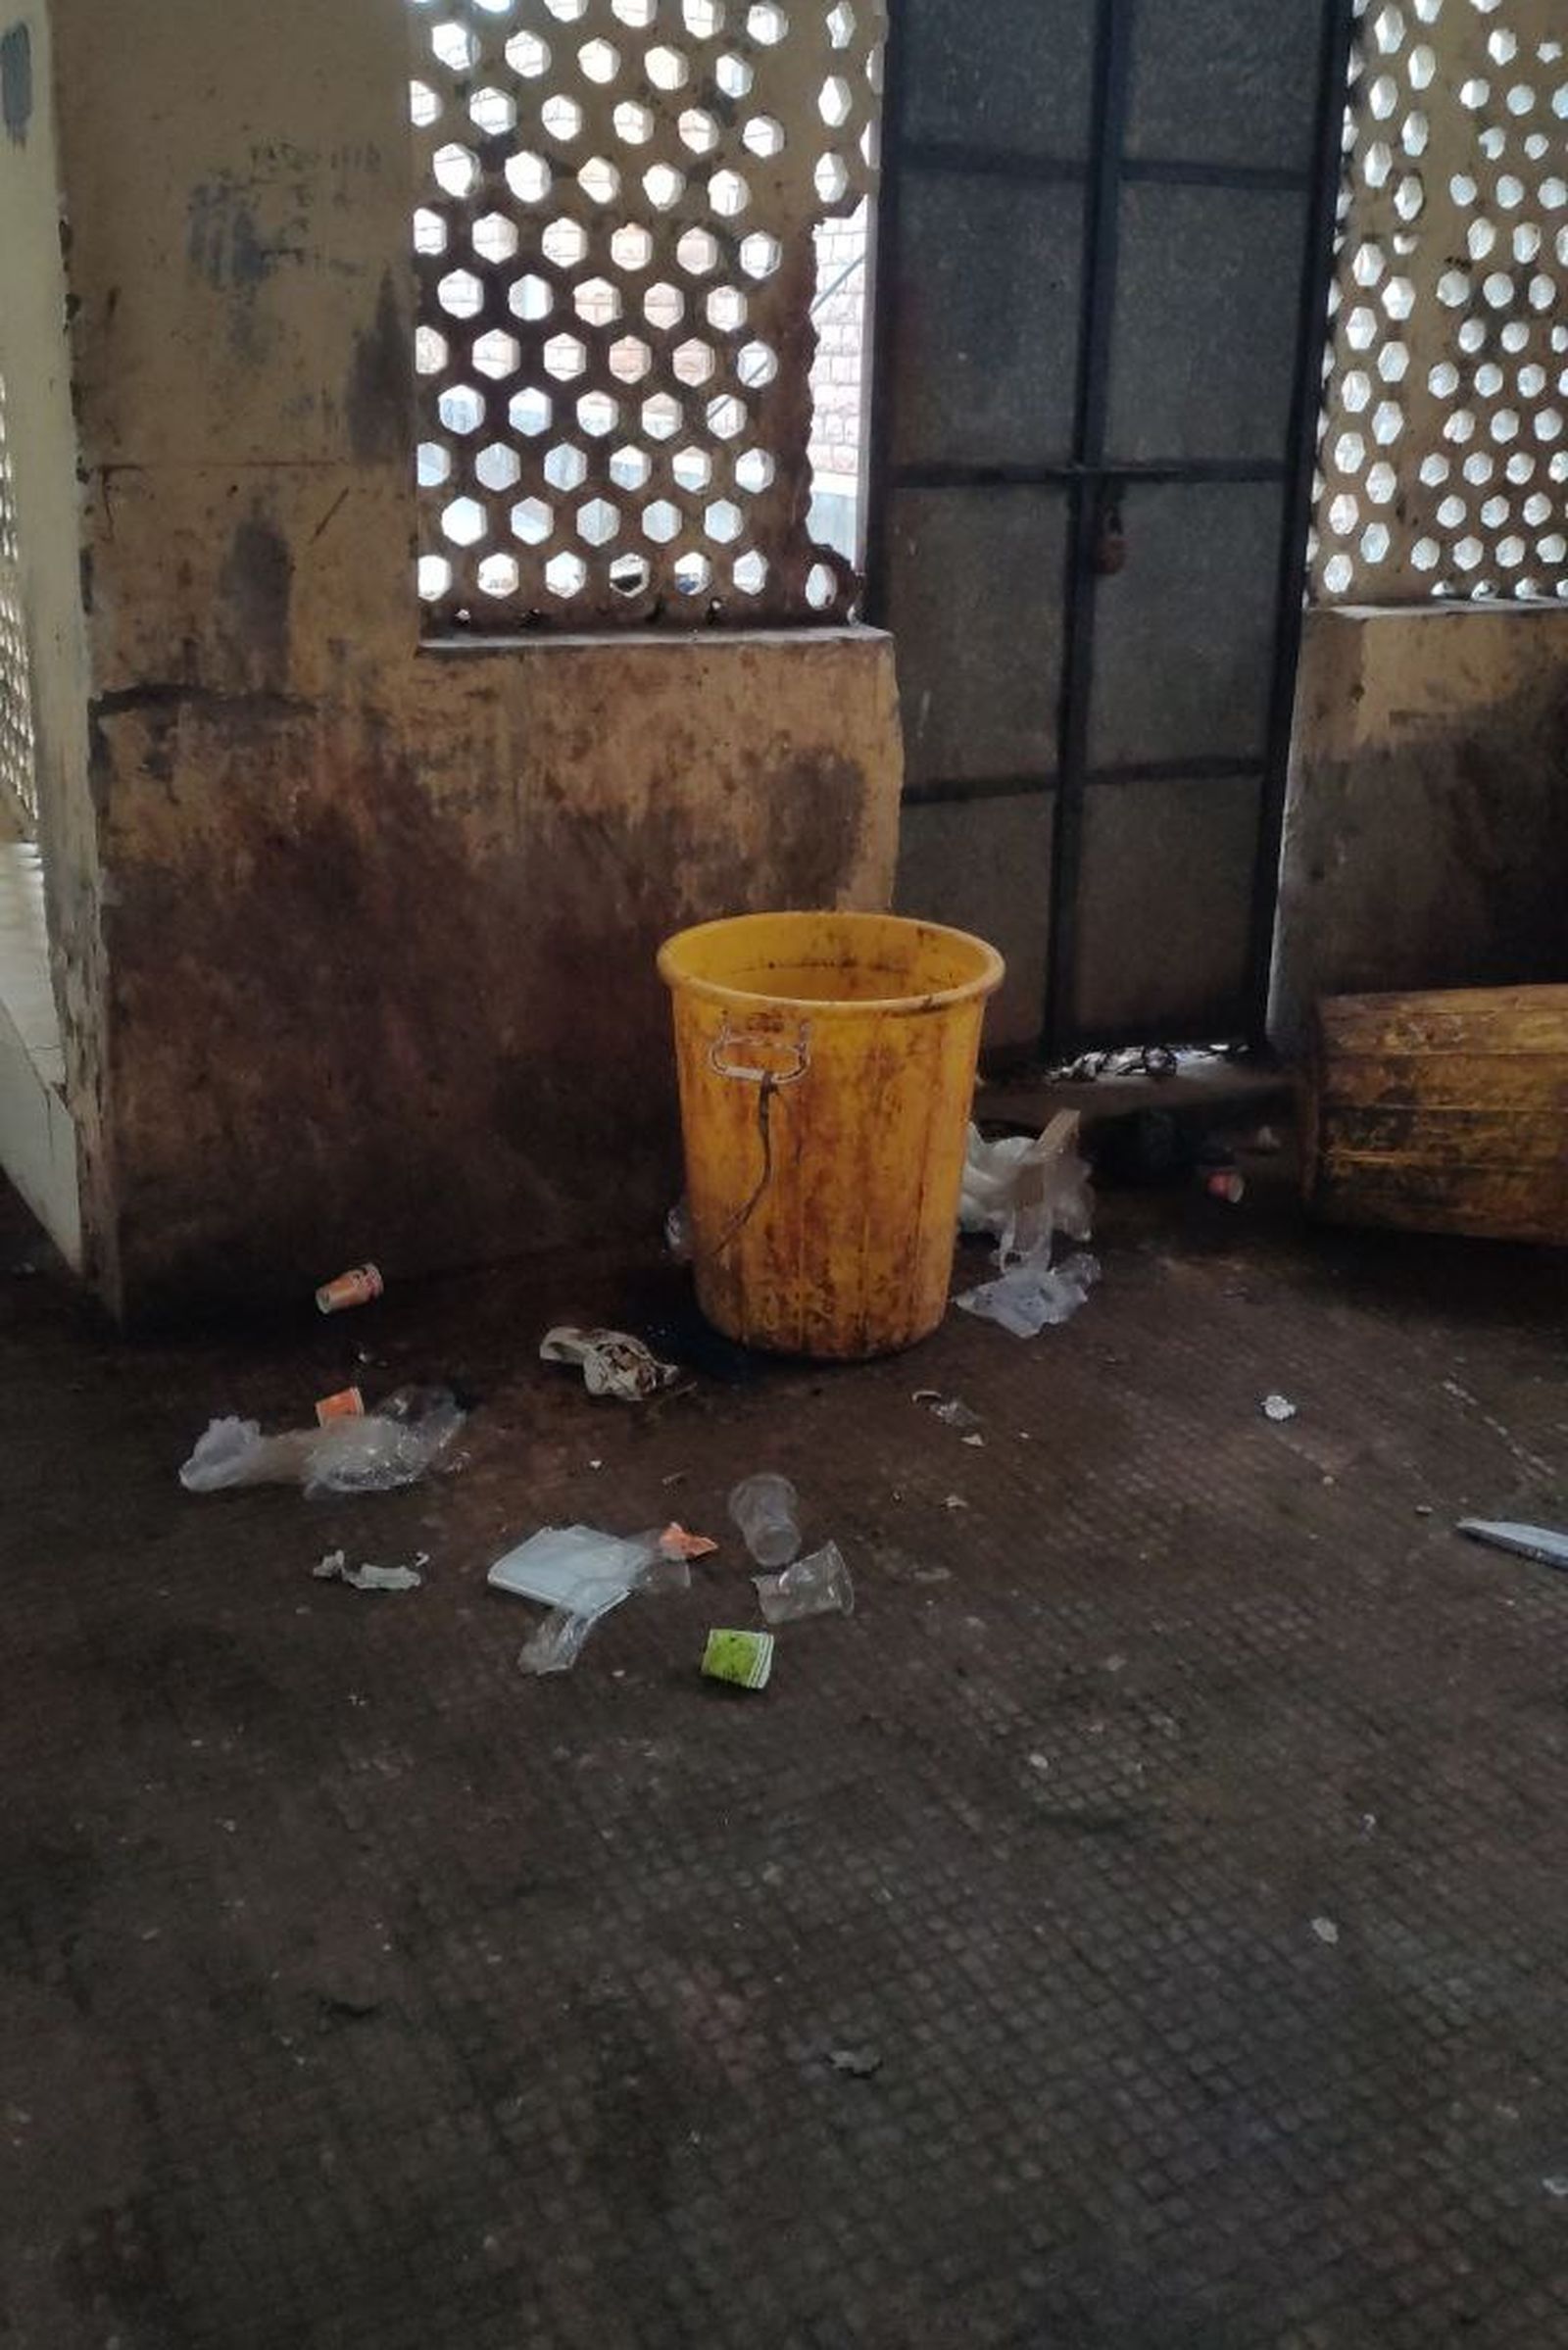 jodhpur hospital: तीनों अस्पतालों की सफाई पर 6.22 करोड़ रुपए खर्च, ये हालात देखकर कैसे माने